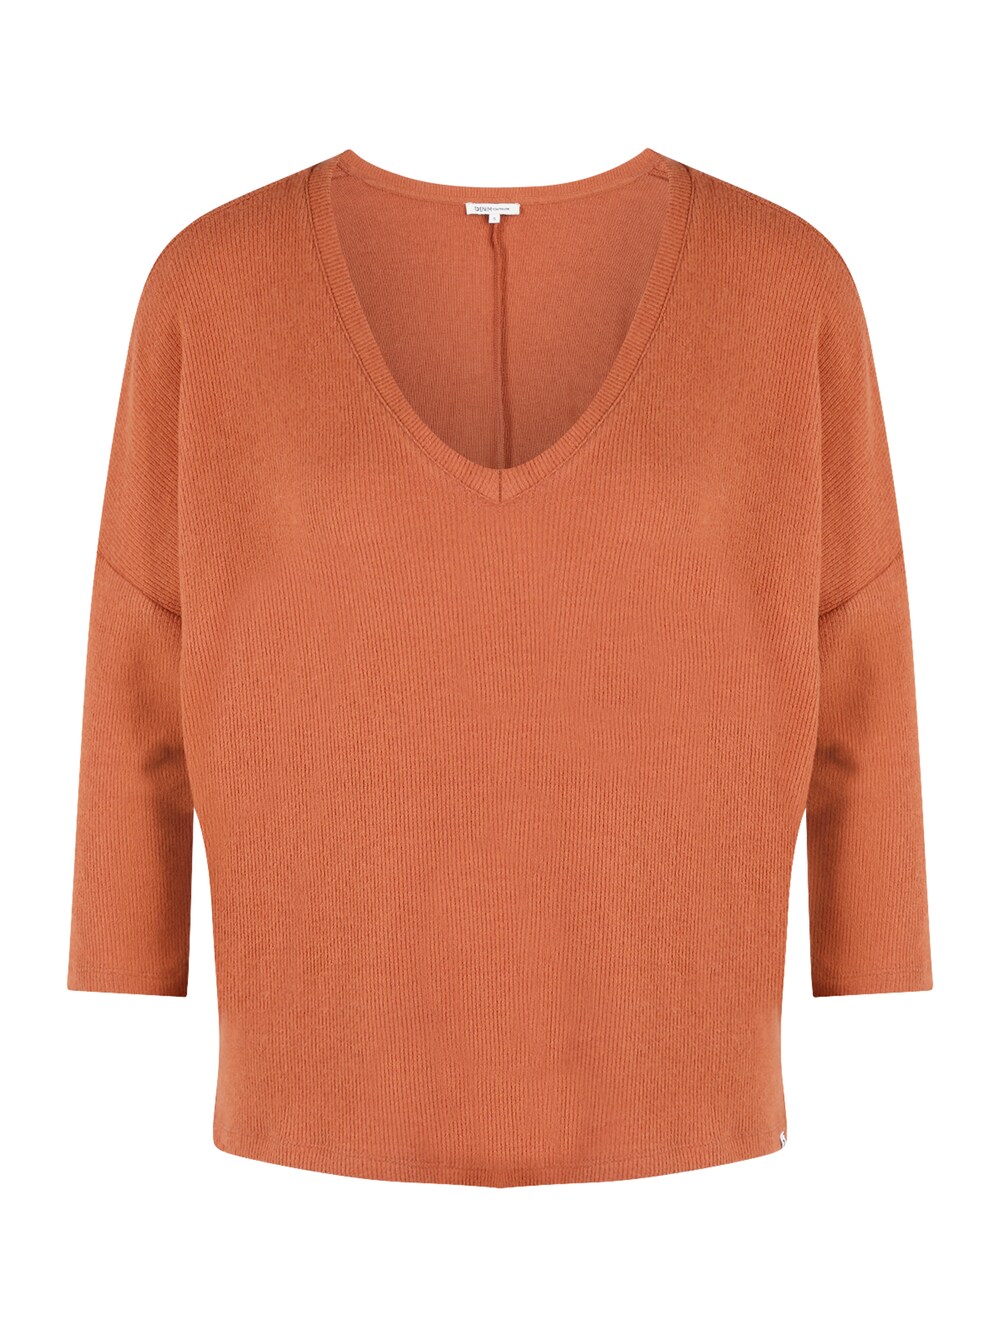 Рубашка Tom Tailor, темно-оранжевый рубашка tom tailor размер l оранжевый